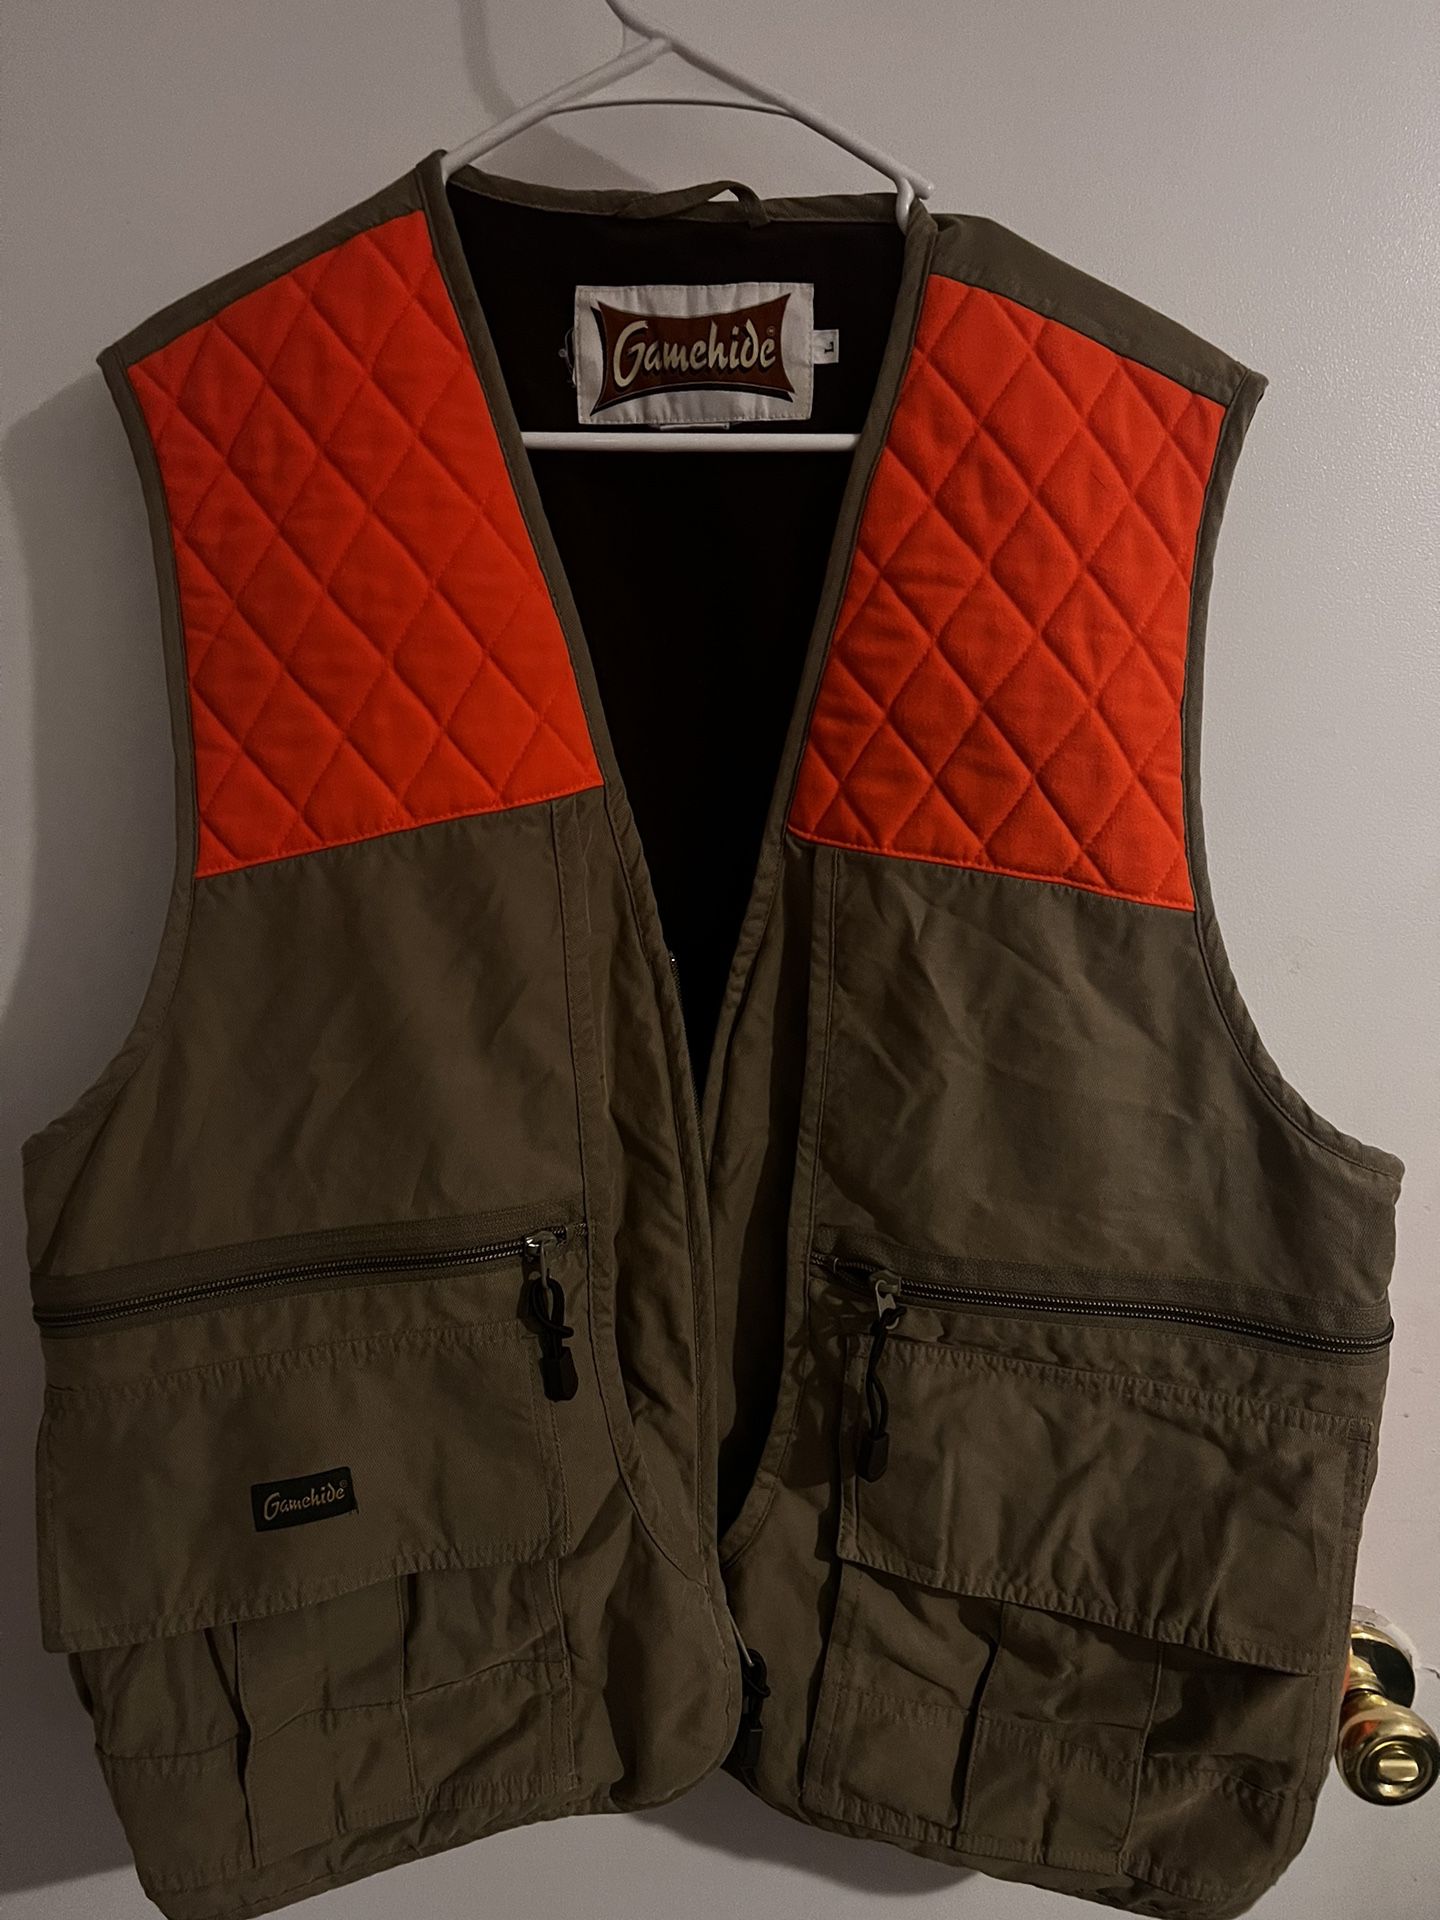 Gamehide hunting vest